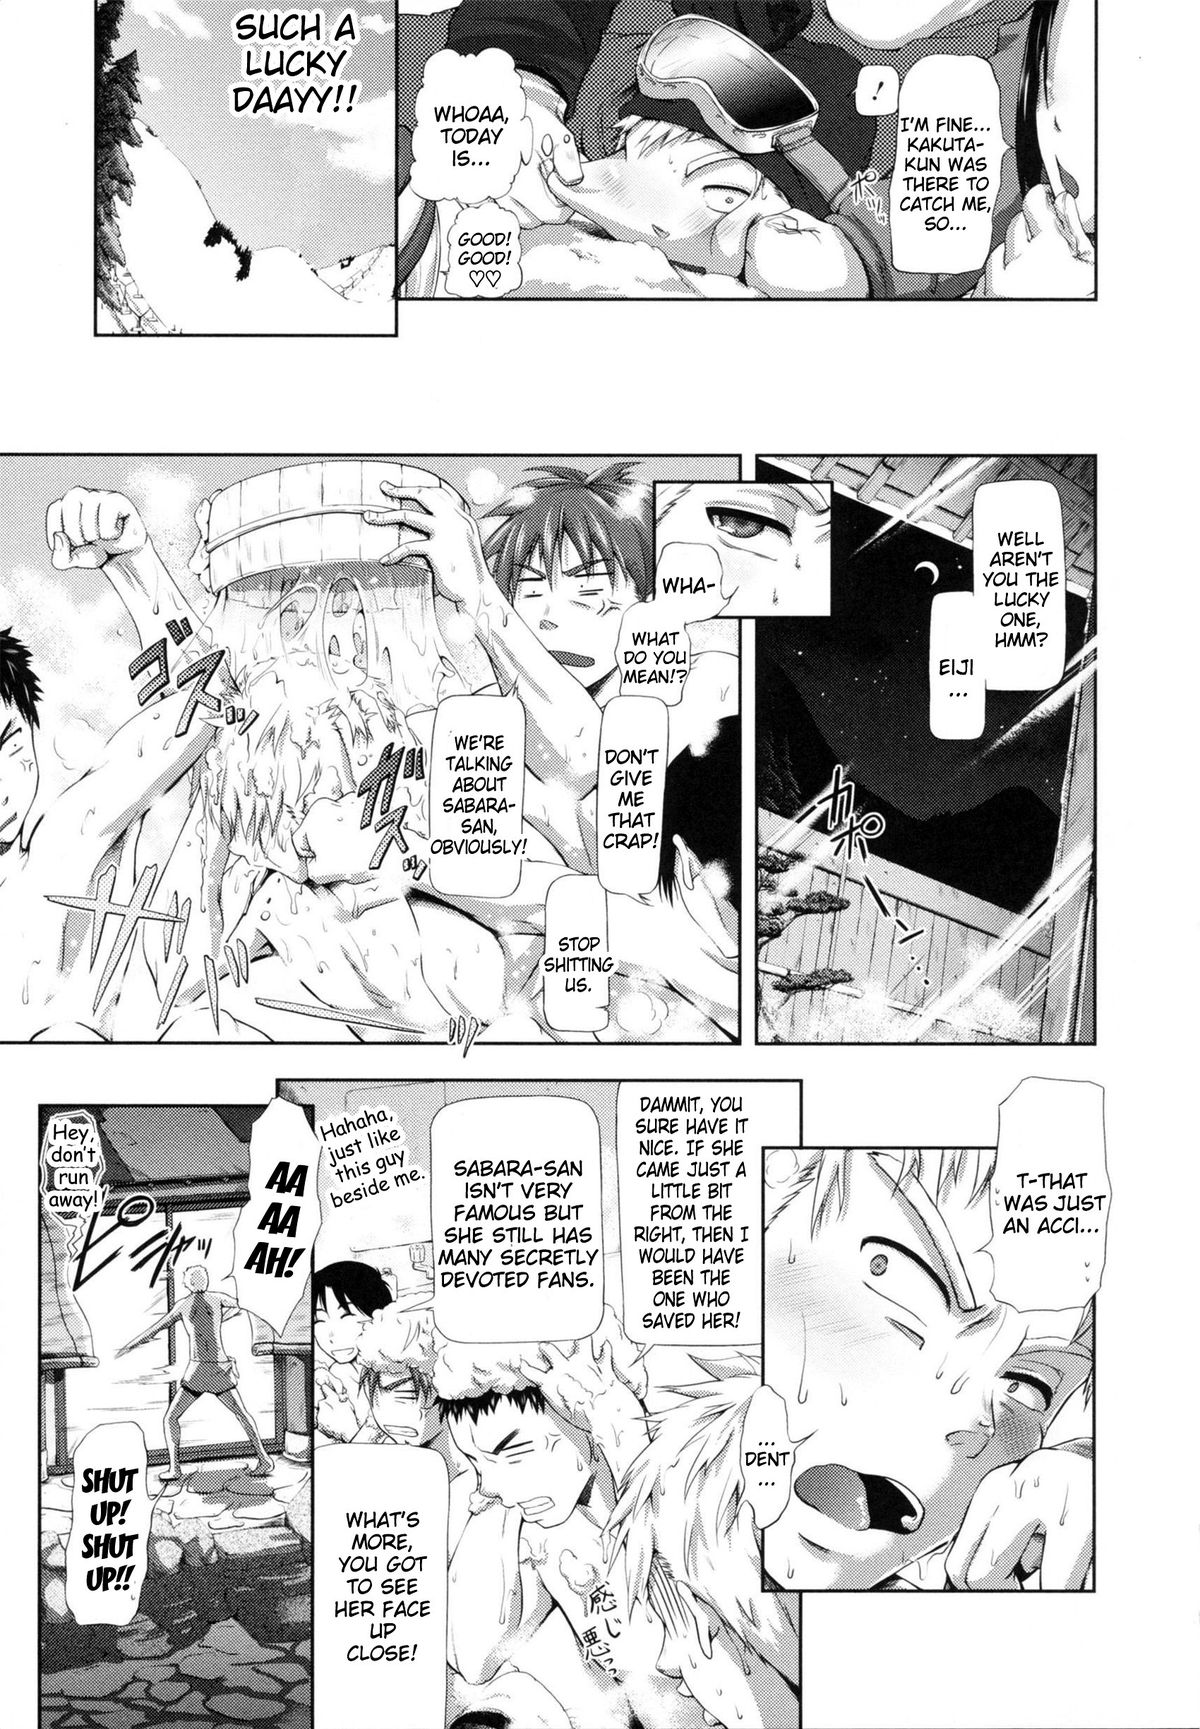 [Kurokoshi You] in Suru? [English] {doujin-moe.us} page 13 full